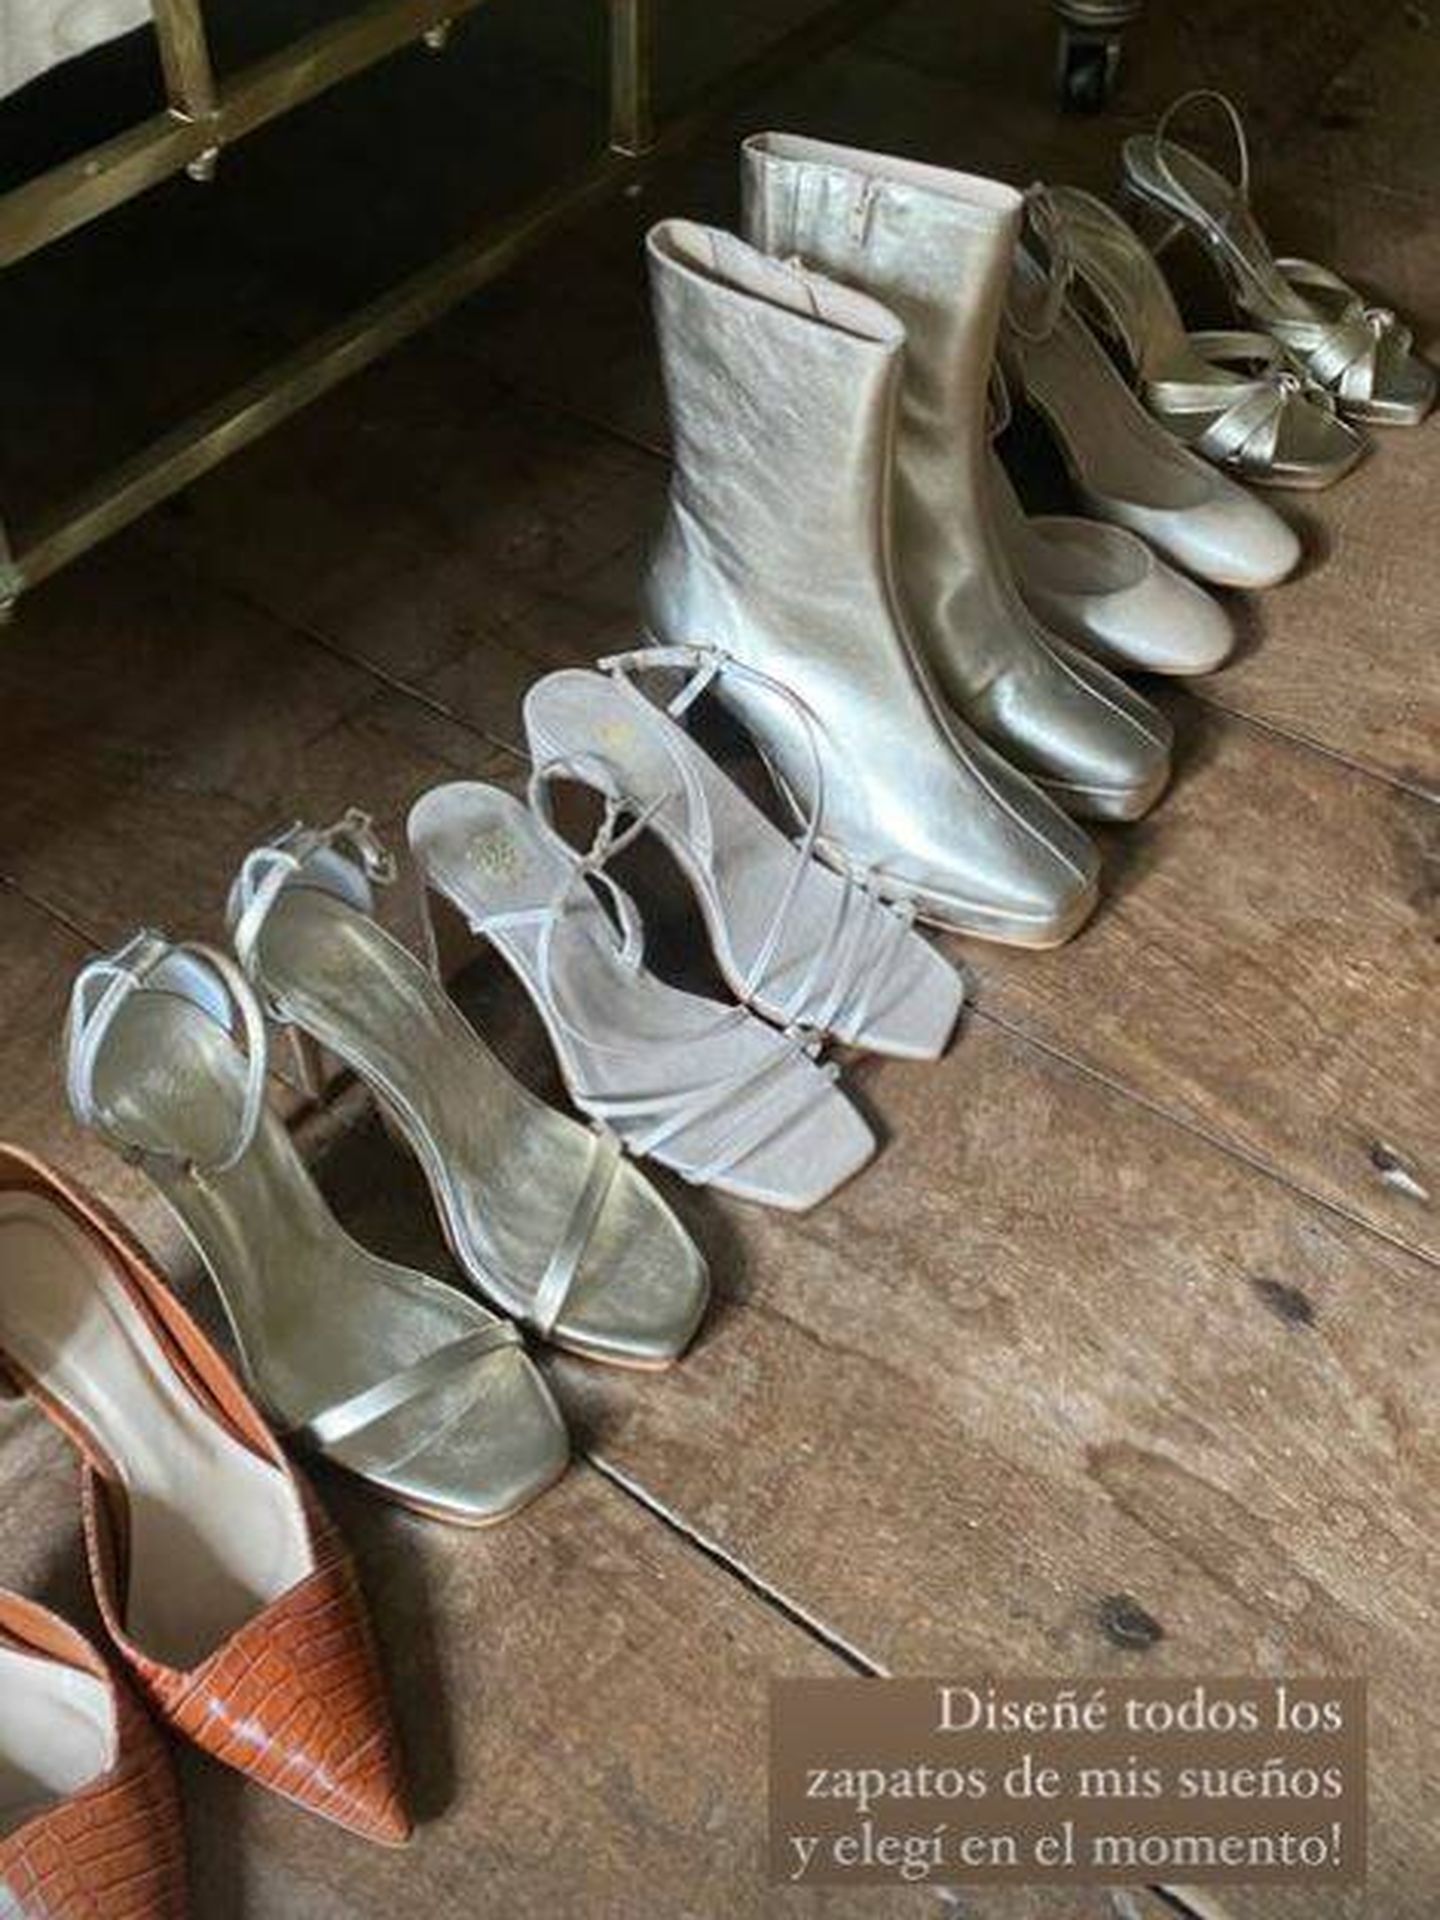 Los seis pares de zapatos diseñados por Laura Corsini. (@bimani13)